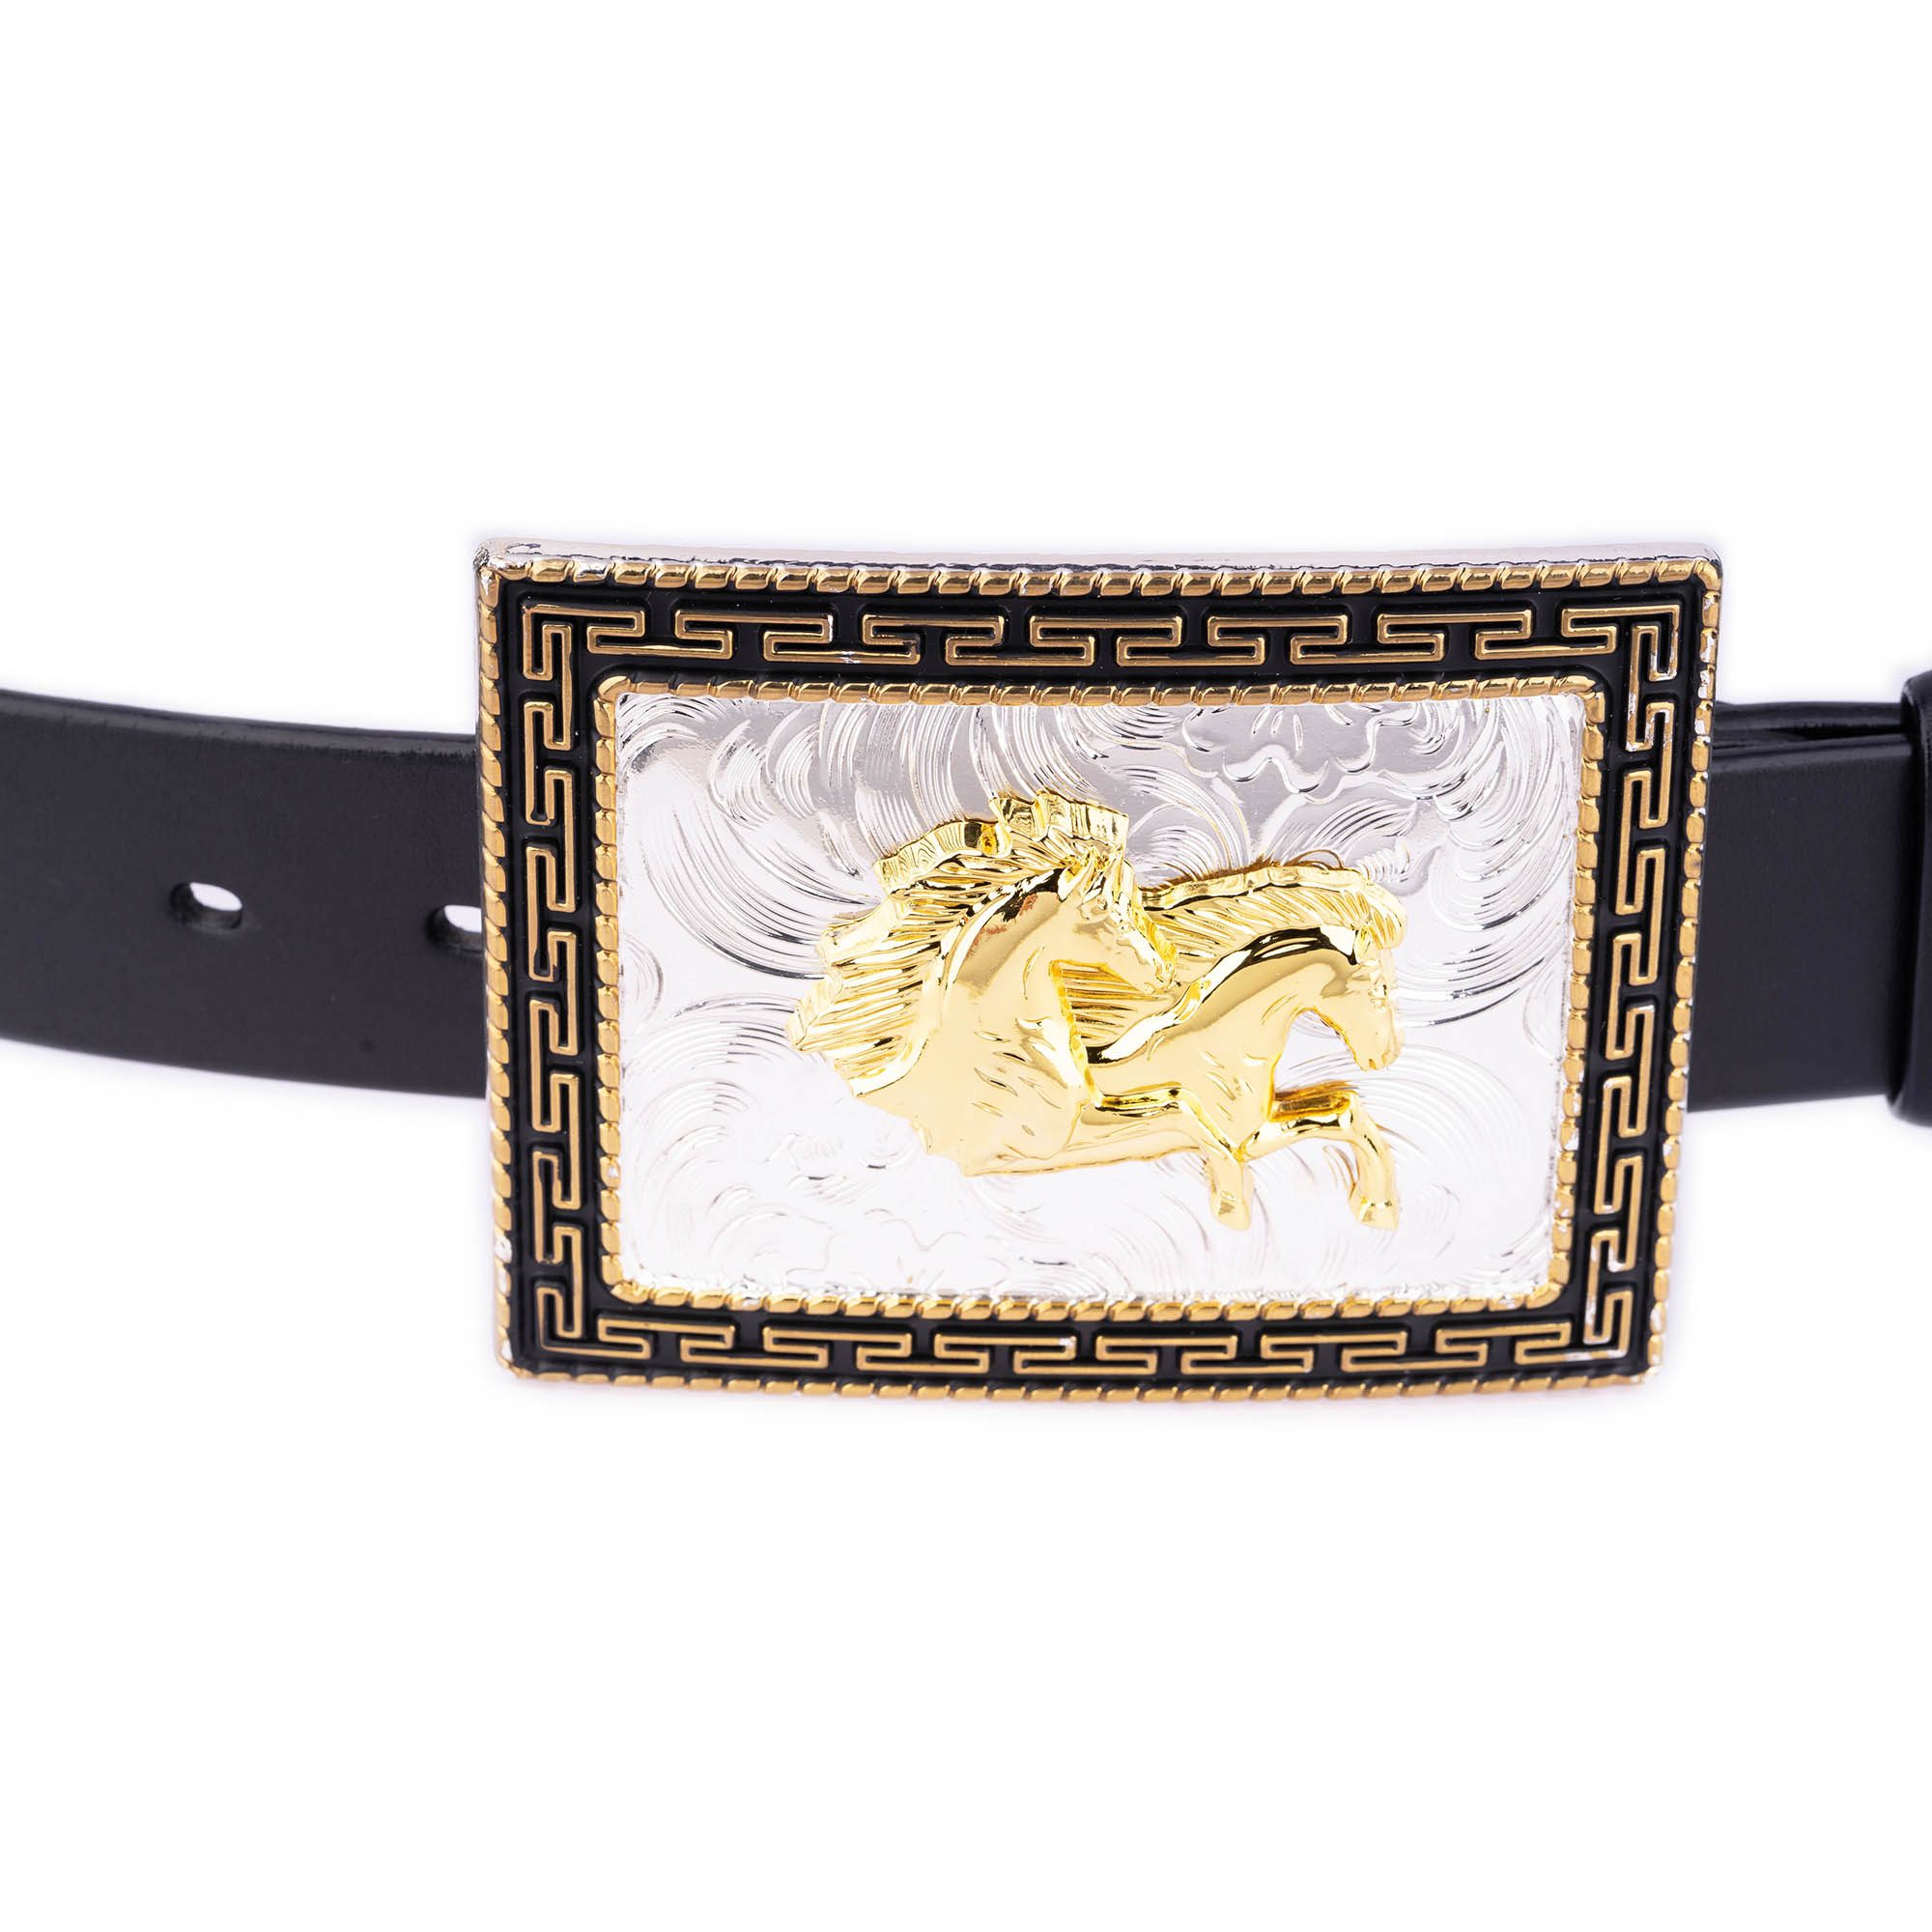 Versace Men's Gold Heritage Medusa Buckle Reversible Leather Belt - Black - Size 90 cm / 35 in - Black/Gold